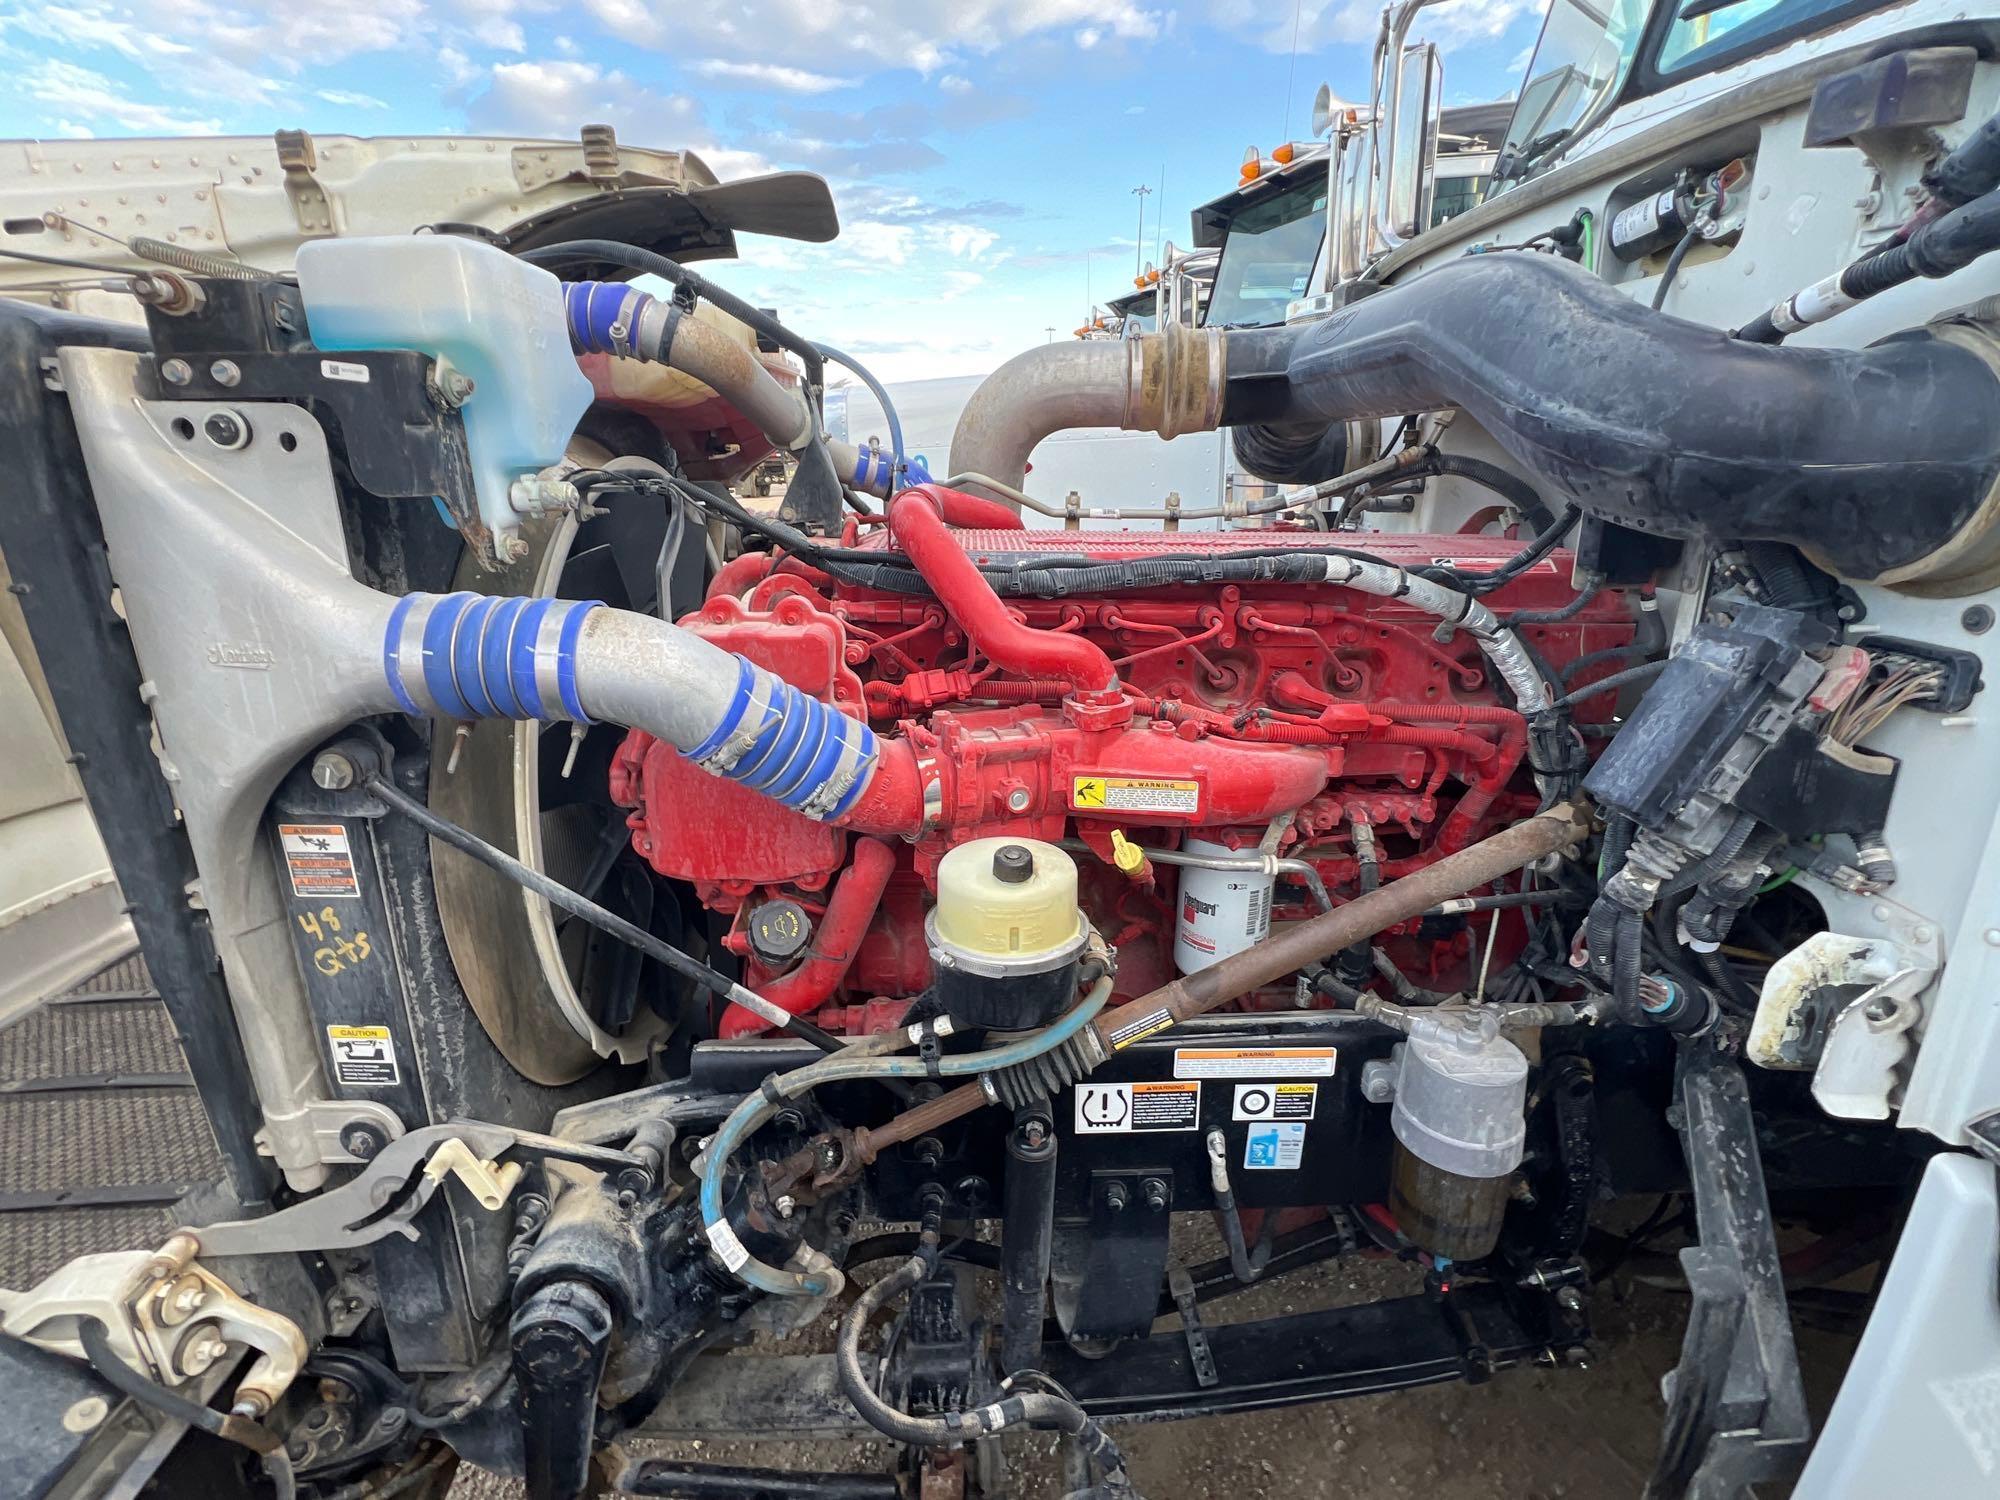 2017 PETERBILT 389 TRUCK TRACTOR VN:1XPXD49X2HD362229...powered by Cummins ISX15 diesel engine,